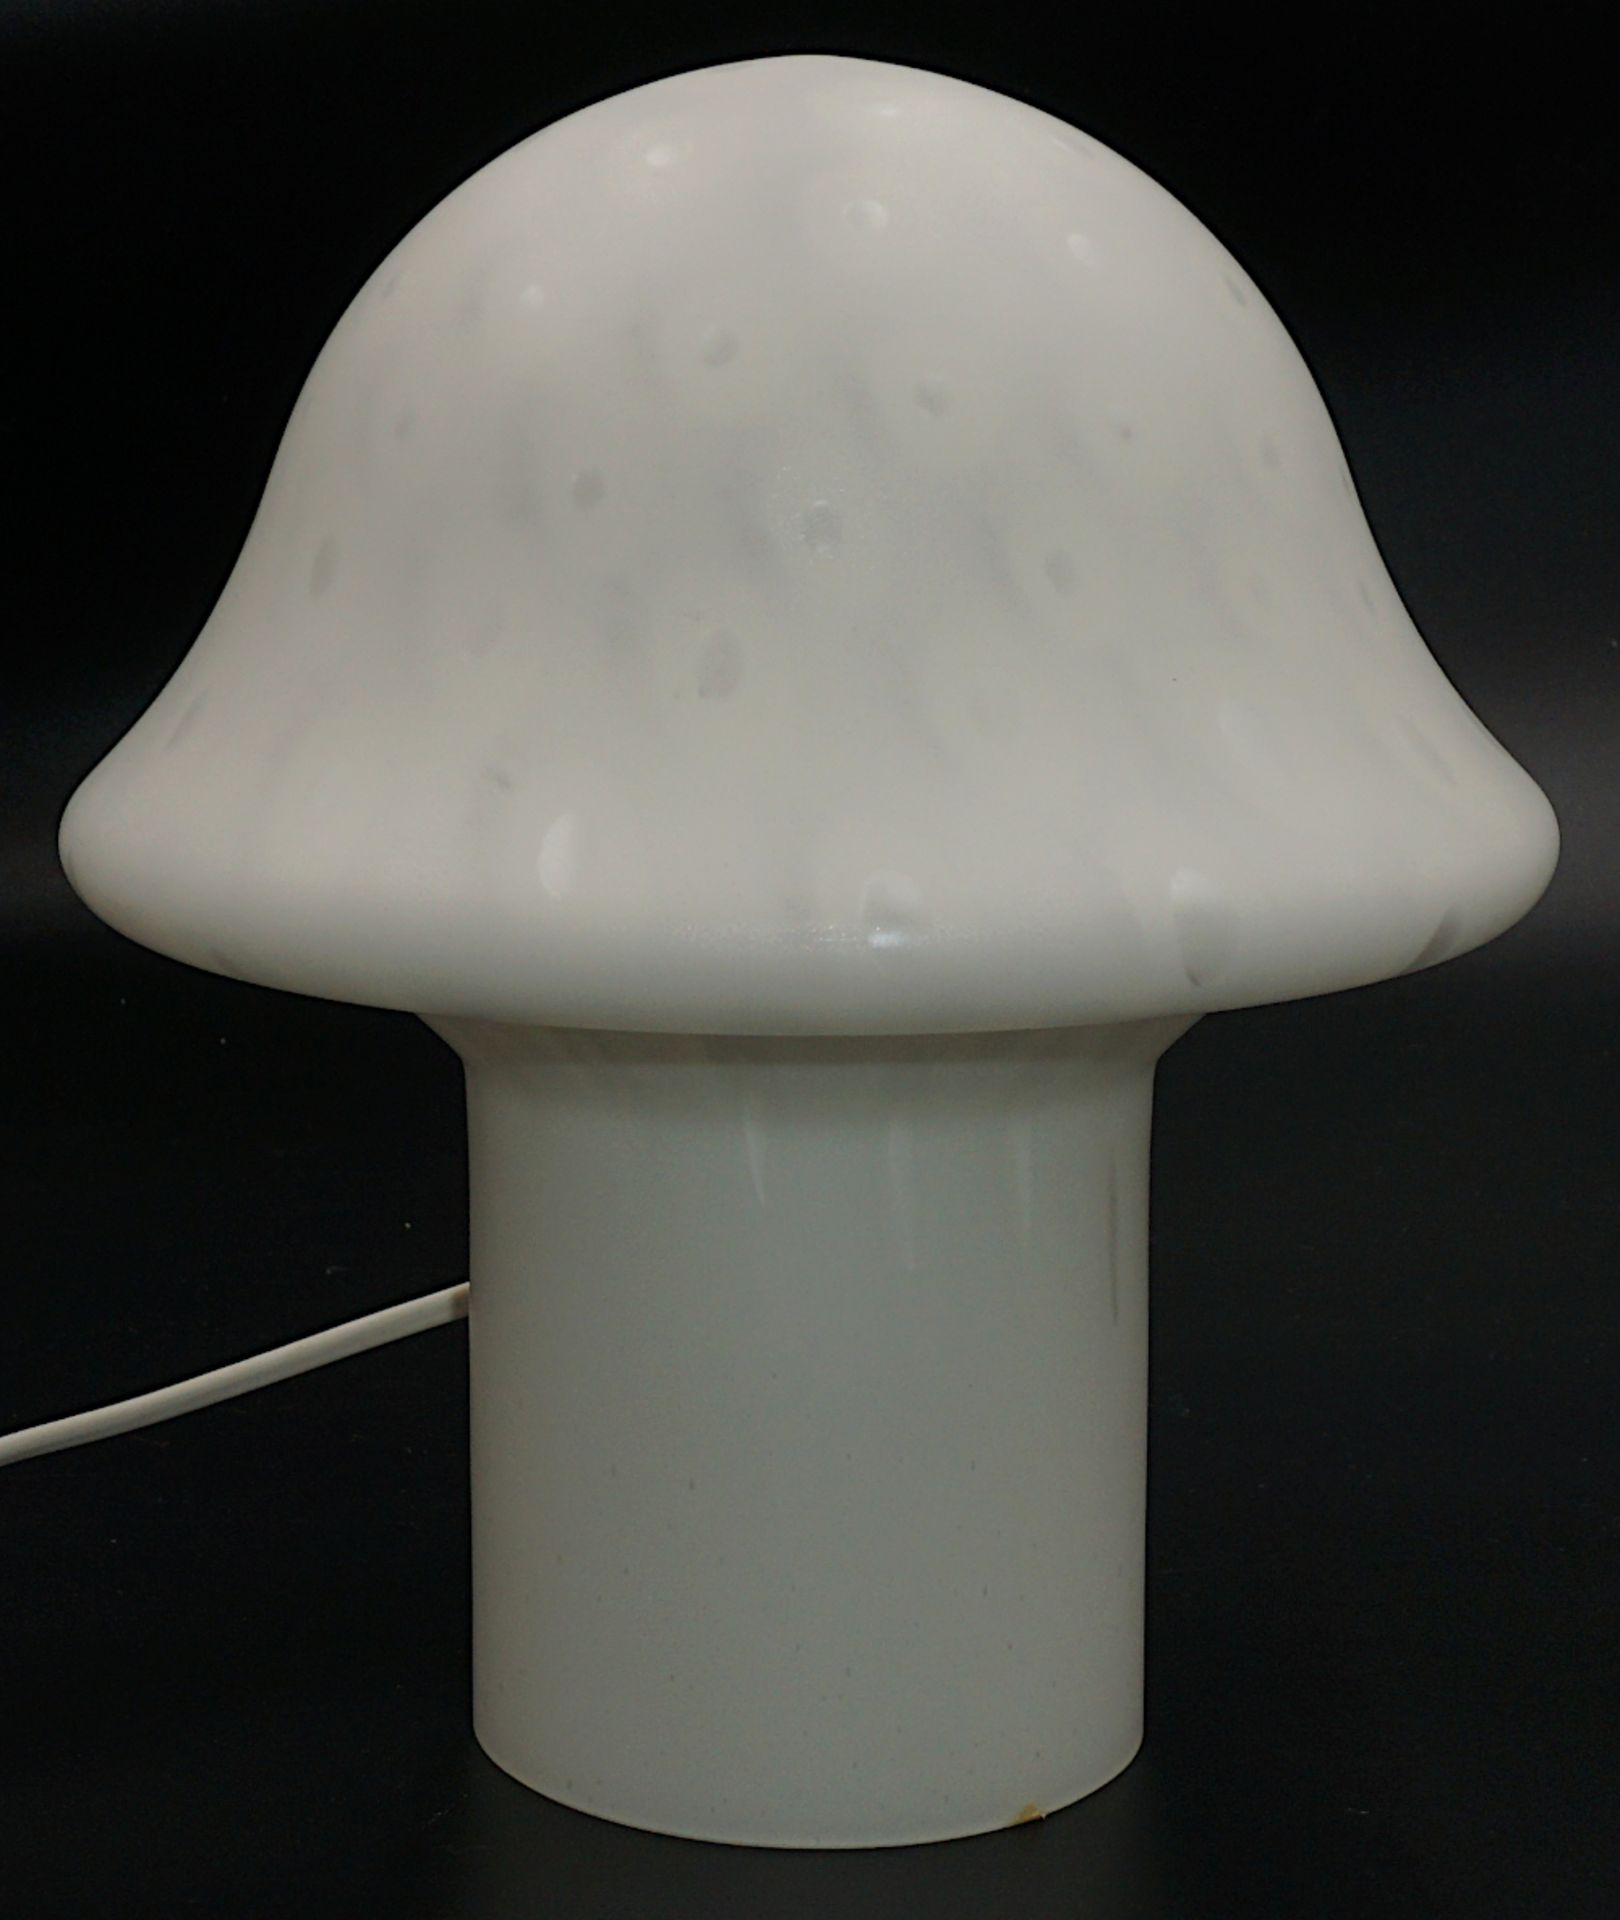 1 Tisch-/Pilzlampe PEILL & PUTZLER wohl 1950er/60er Jahre Milchglas u.a., H ca. 24cm, min. ber./Asp. - Bild 2 aus 2